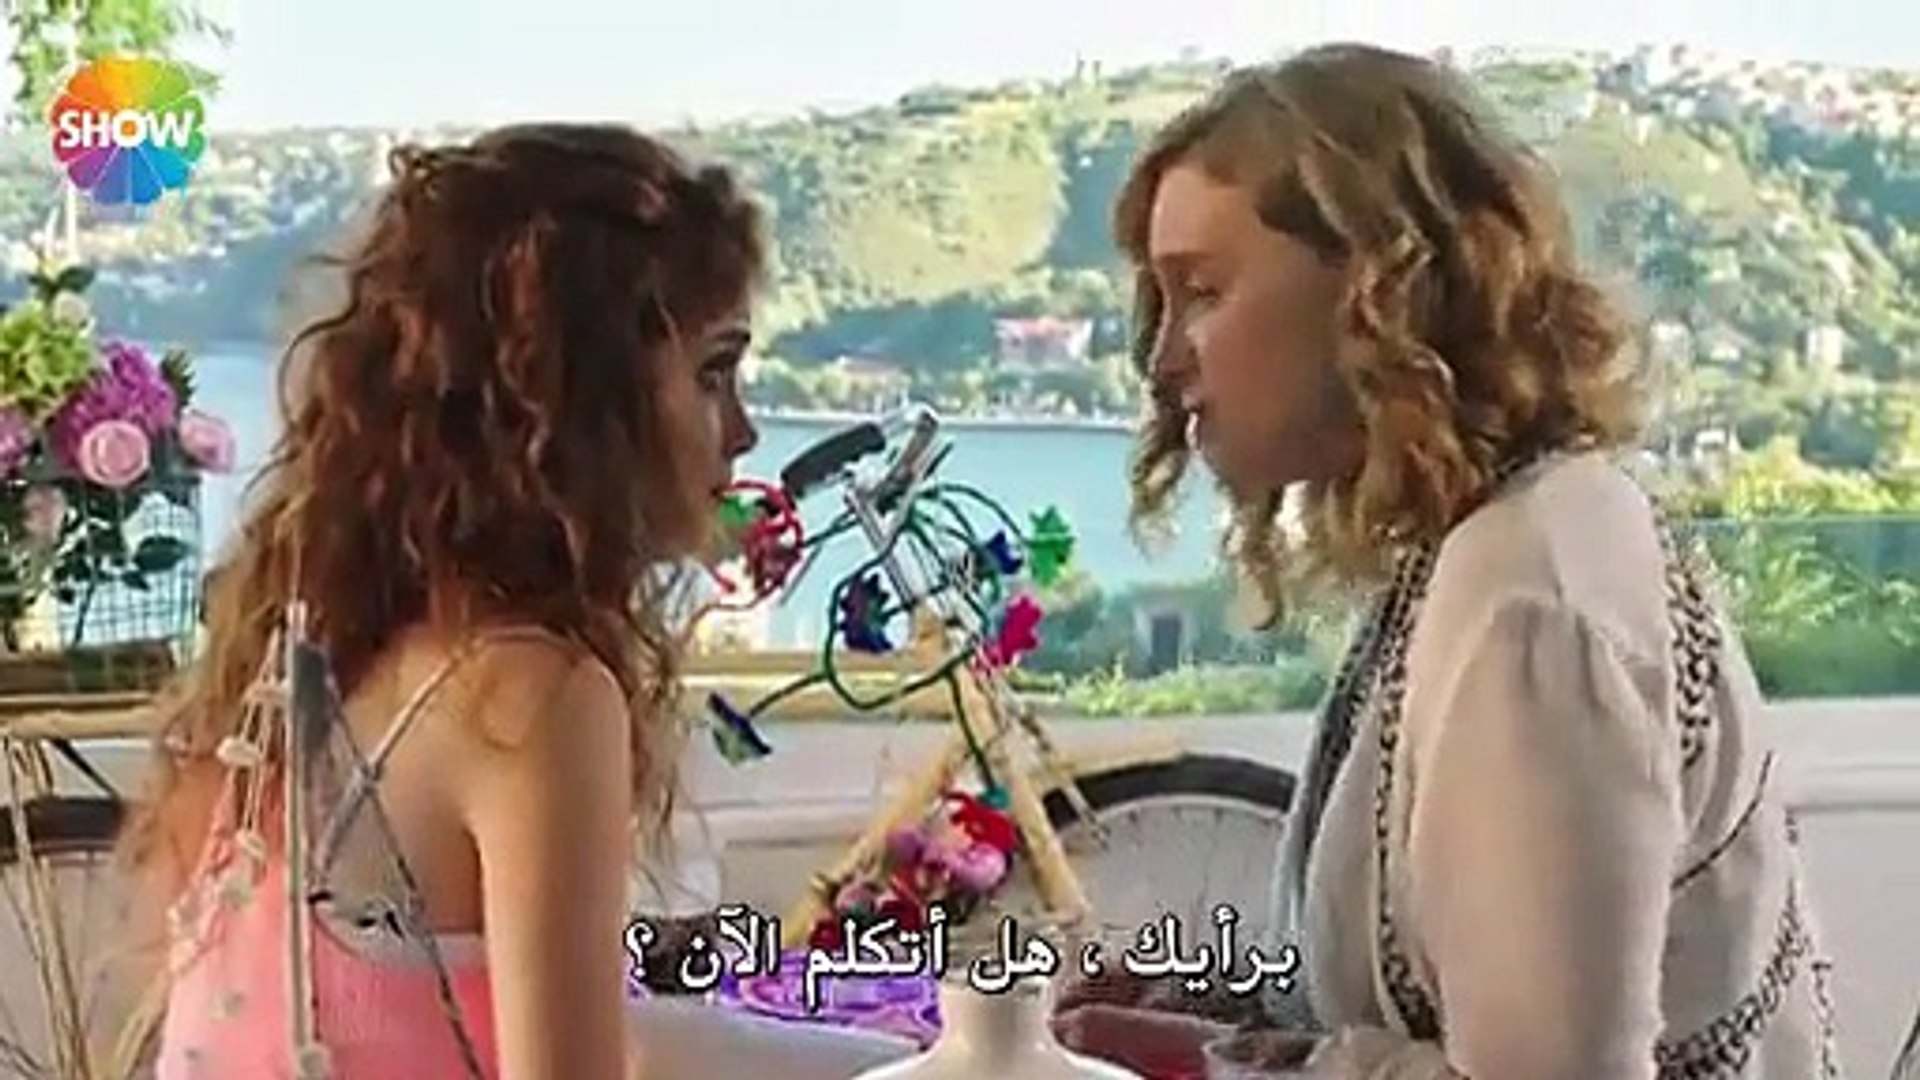 مسلسل الاصدقاء الجيدون الحلقة 2 القسم (2) مترجم للعربية - فيديو Dailymotion